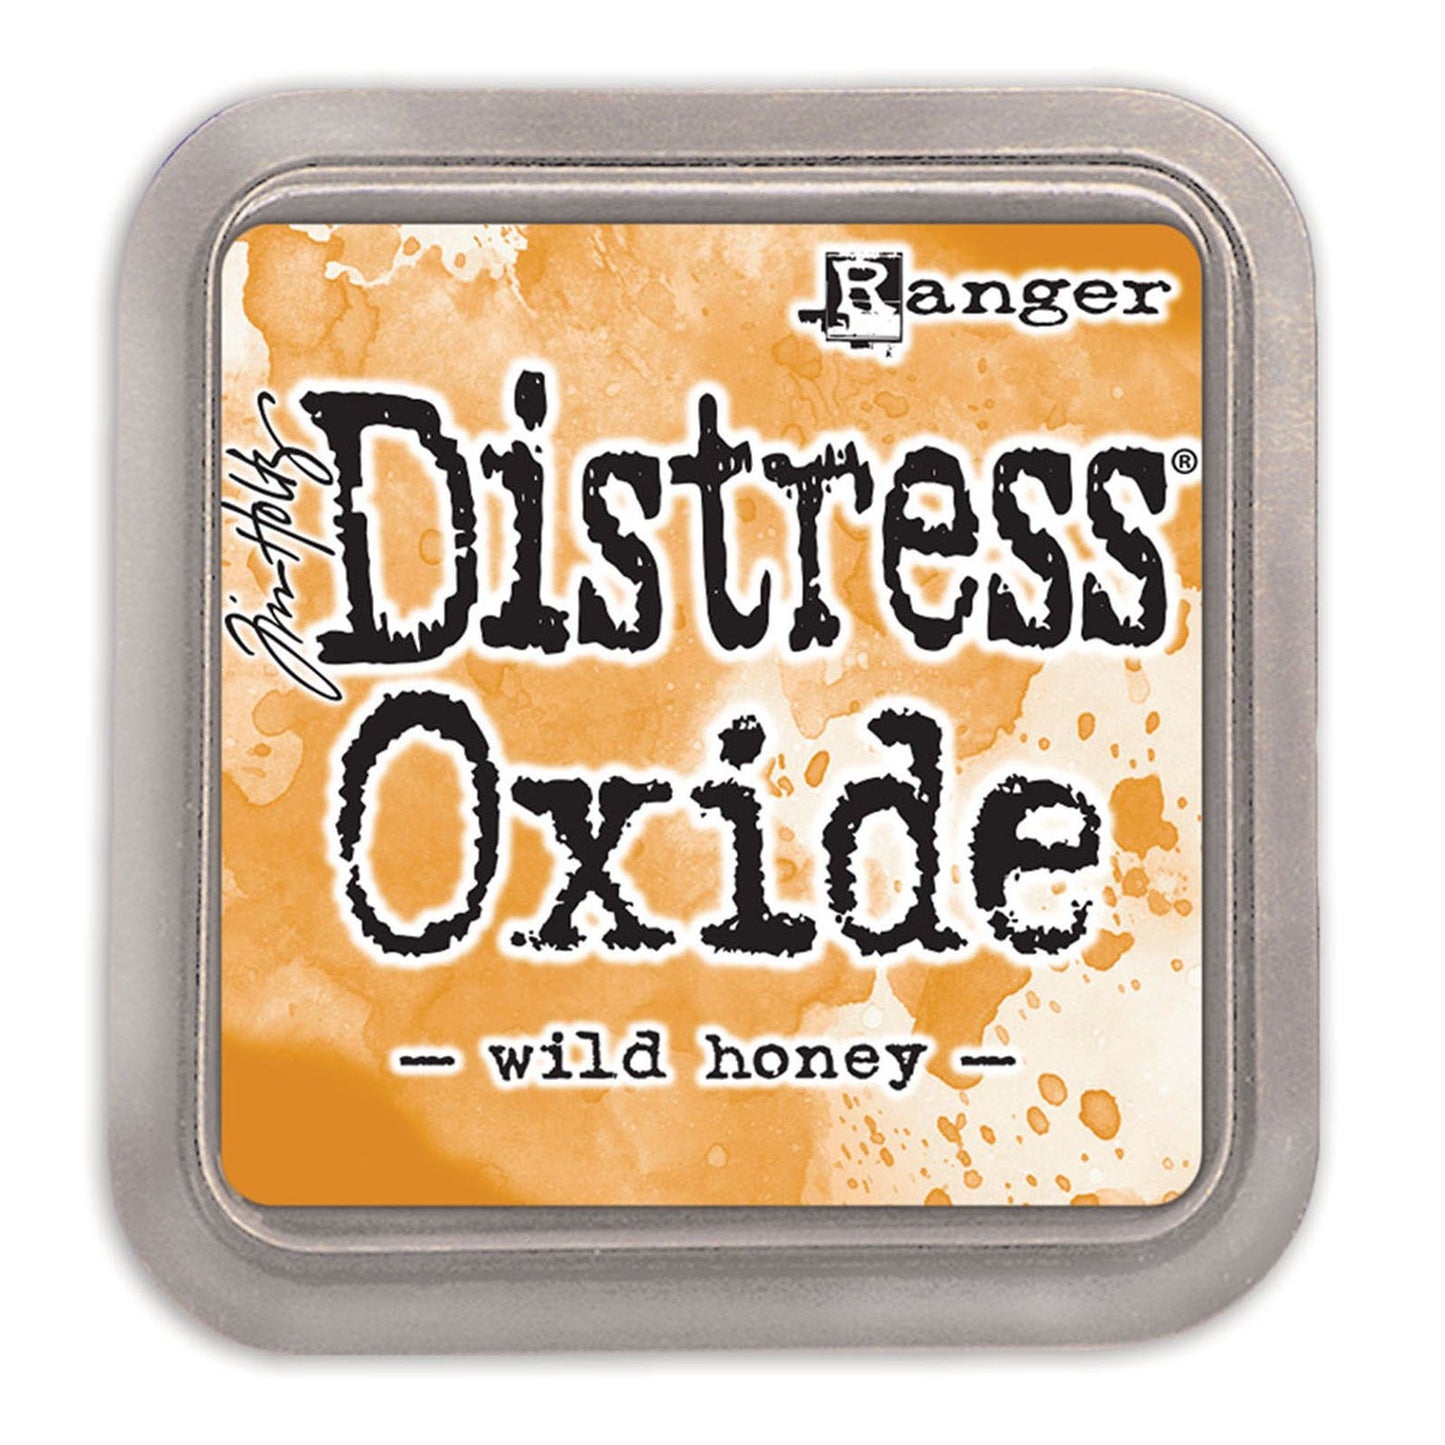 Tinta Distress Oxide Wild honey